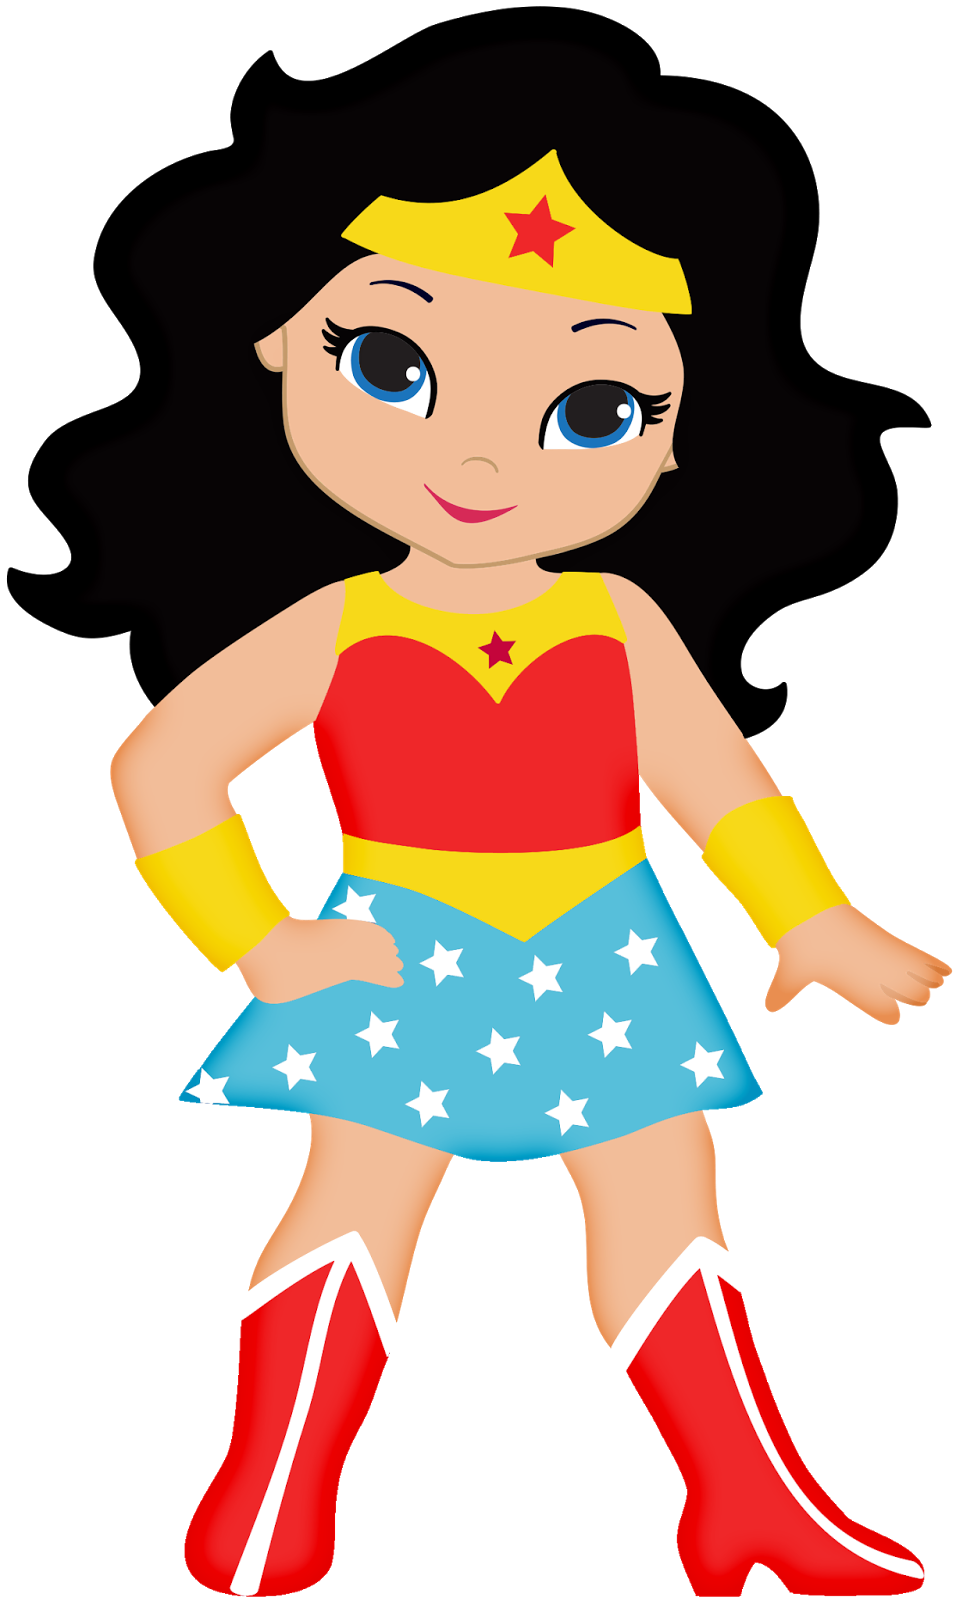 Super Woman Cartoon Superwoma - Superwoman Clipart